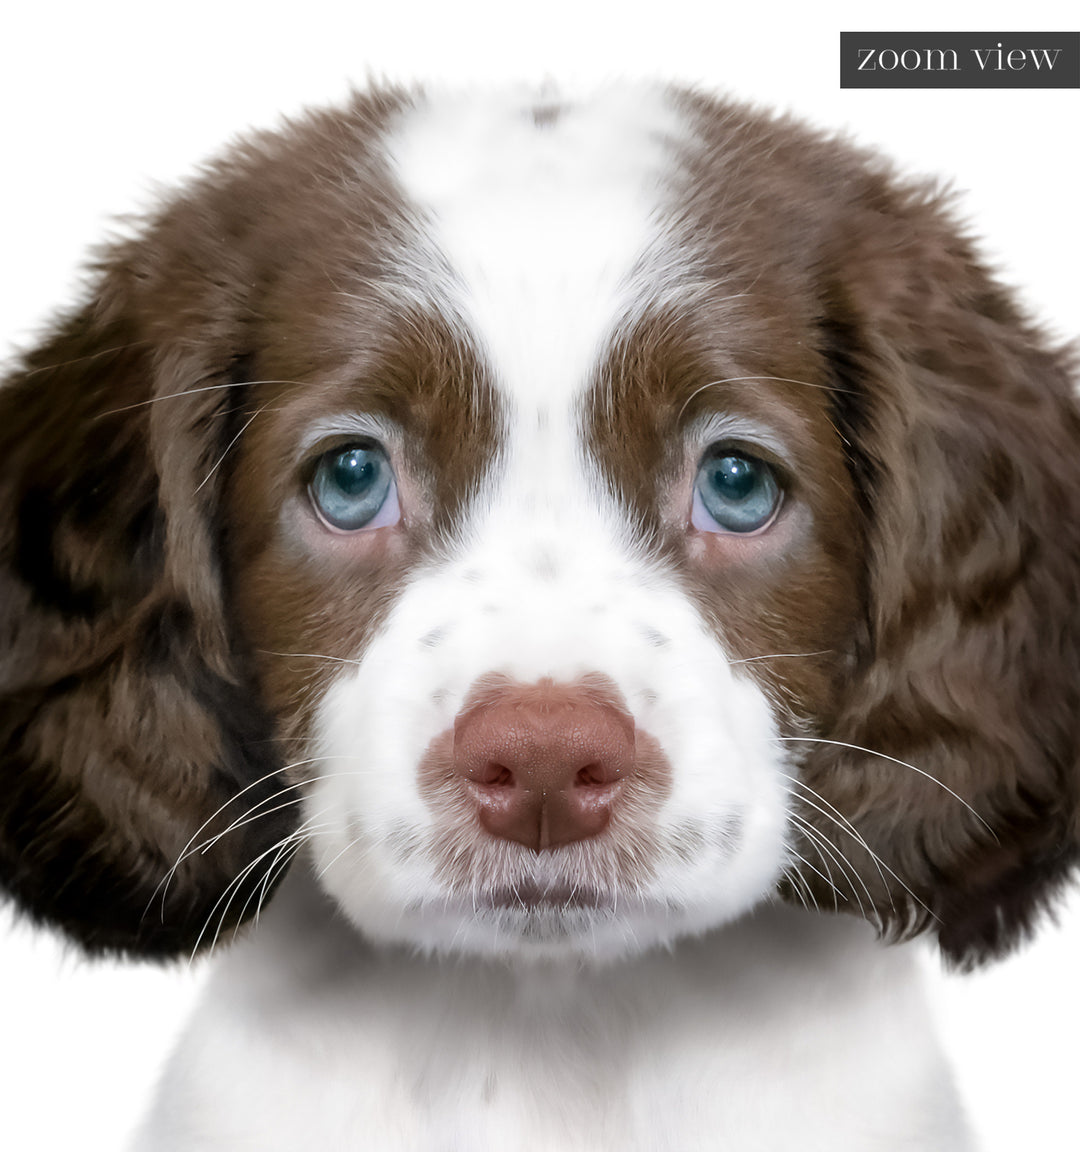 Baby Puppy Springer Spaniel Portrait